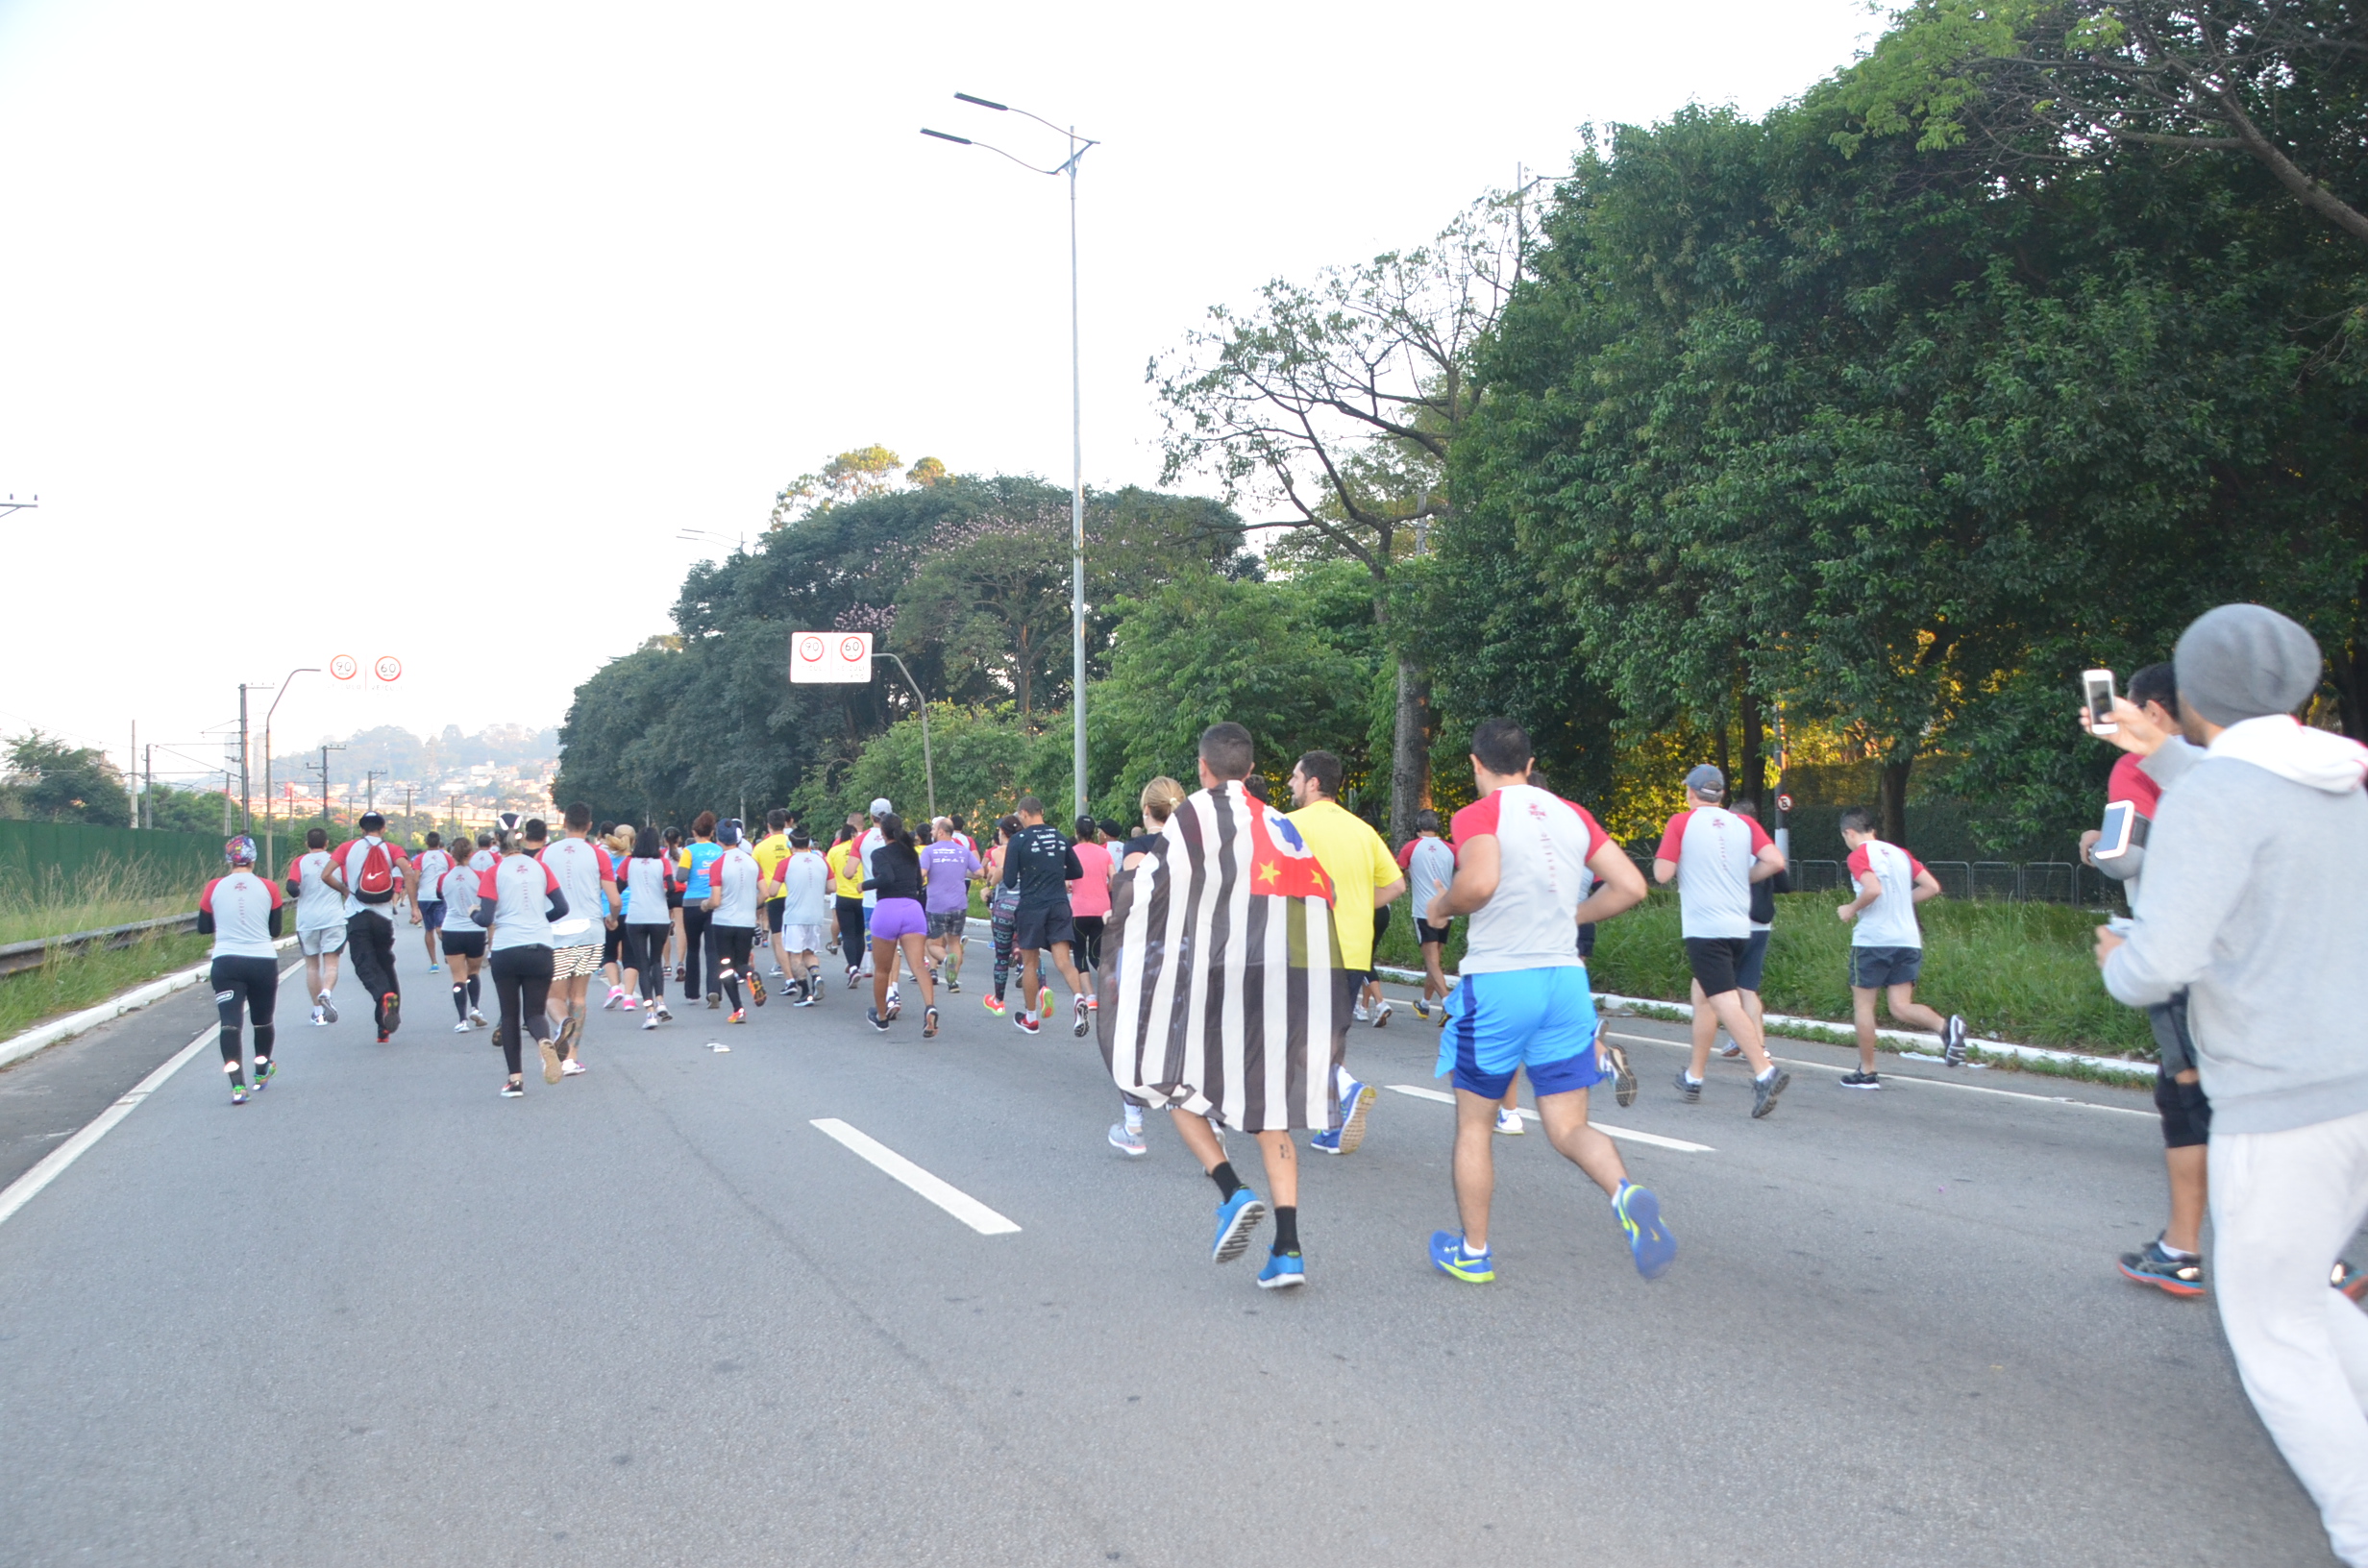 Atletas correndo pelas ruas de São Paulo